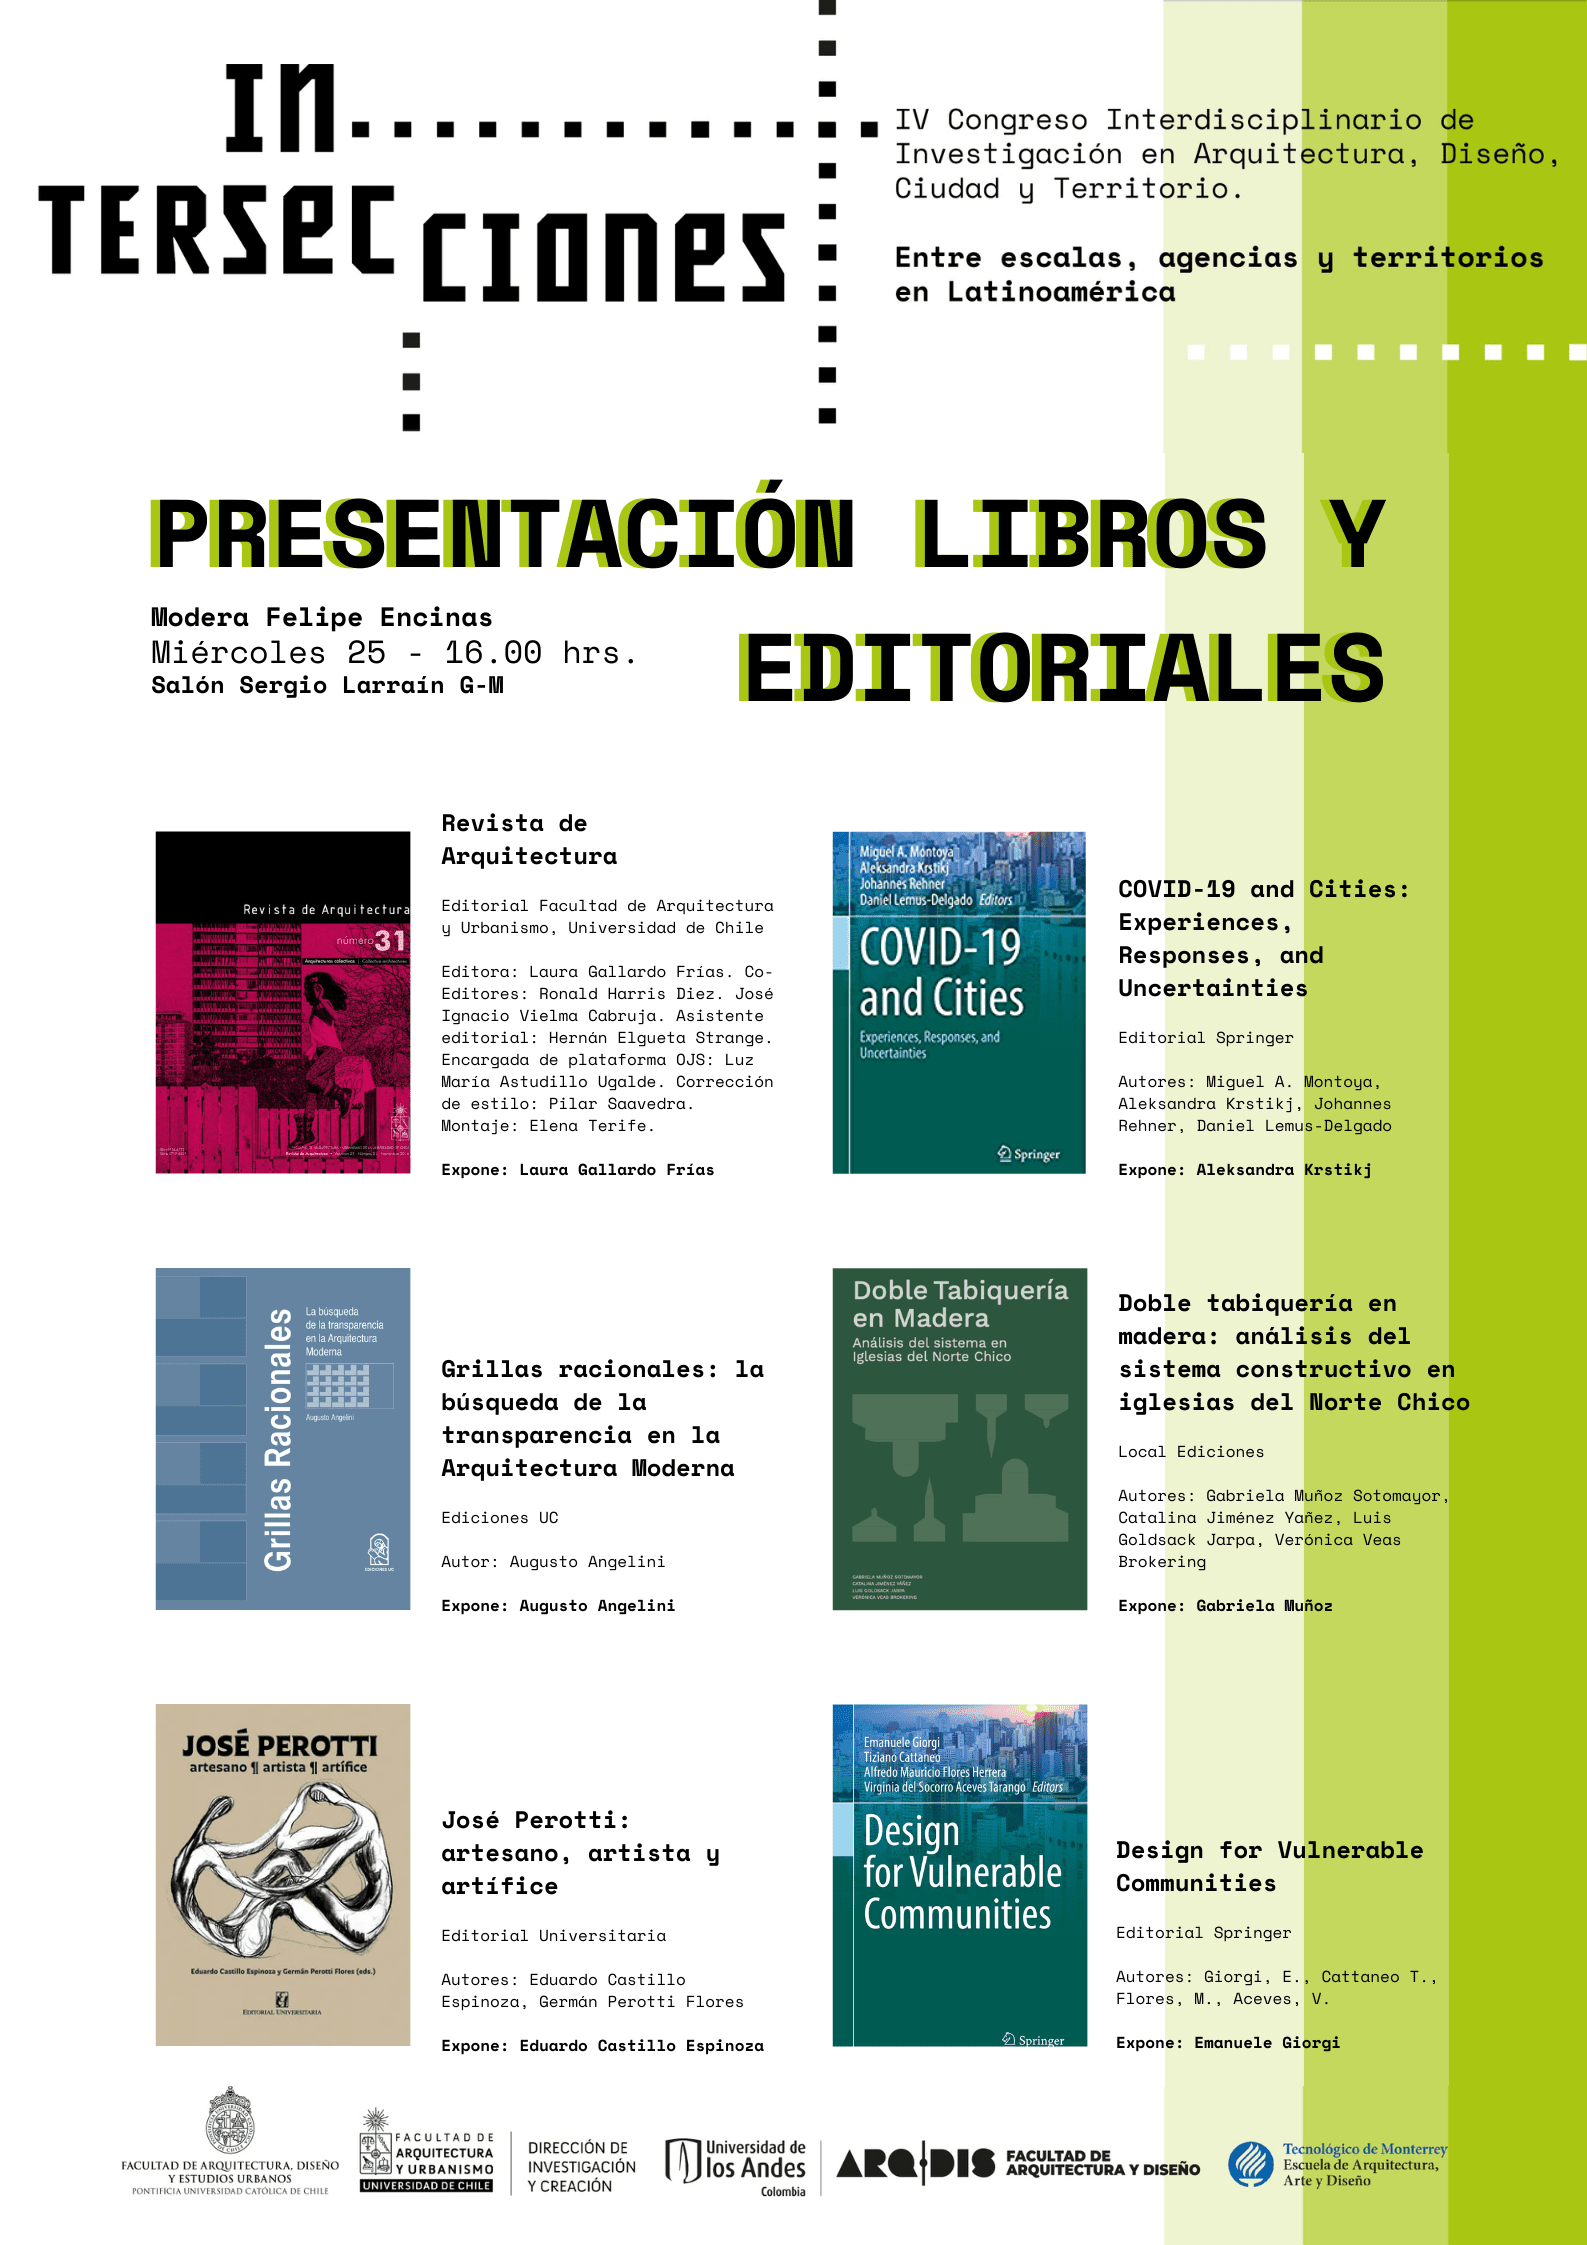 Presentación de libros y editoriales